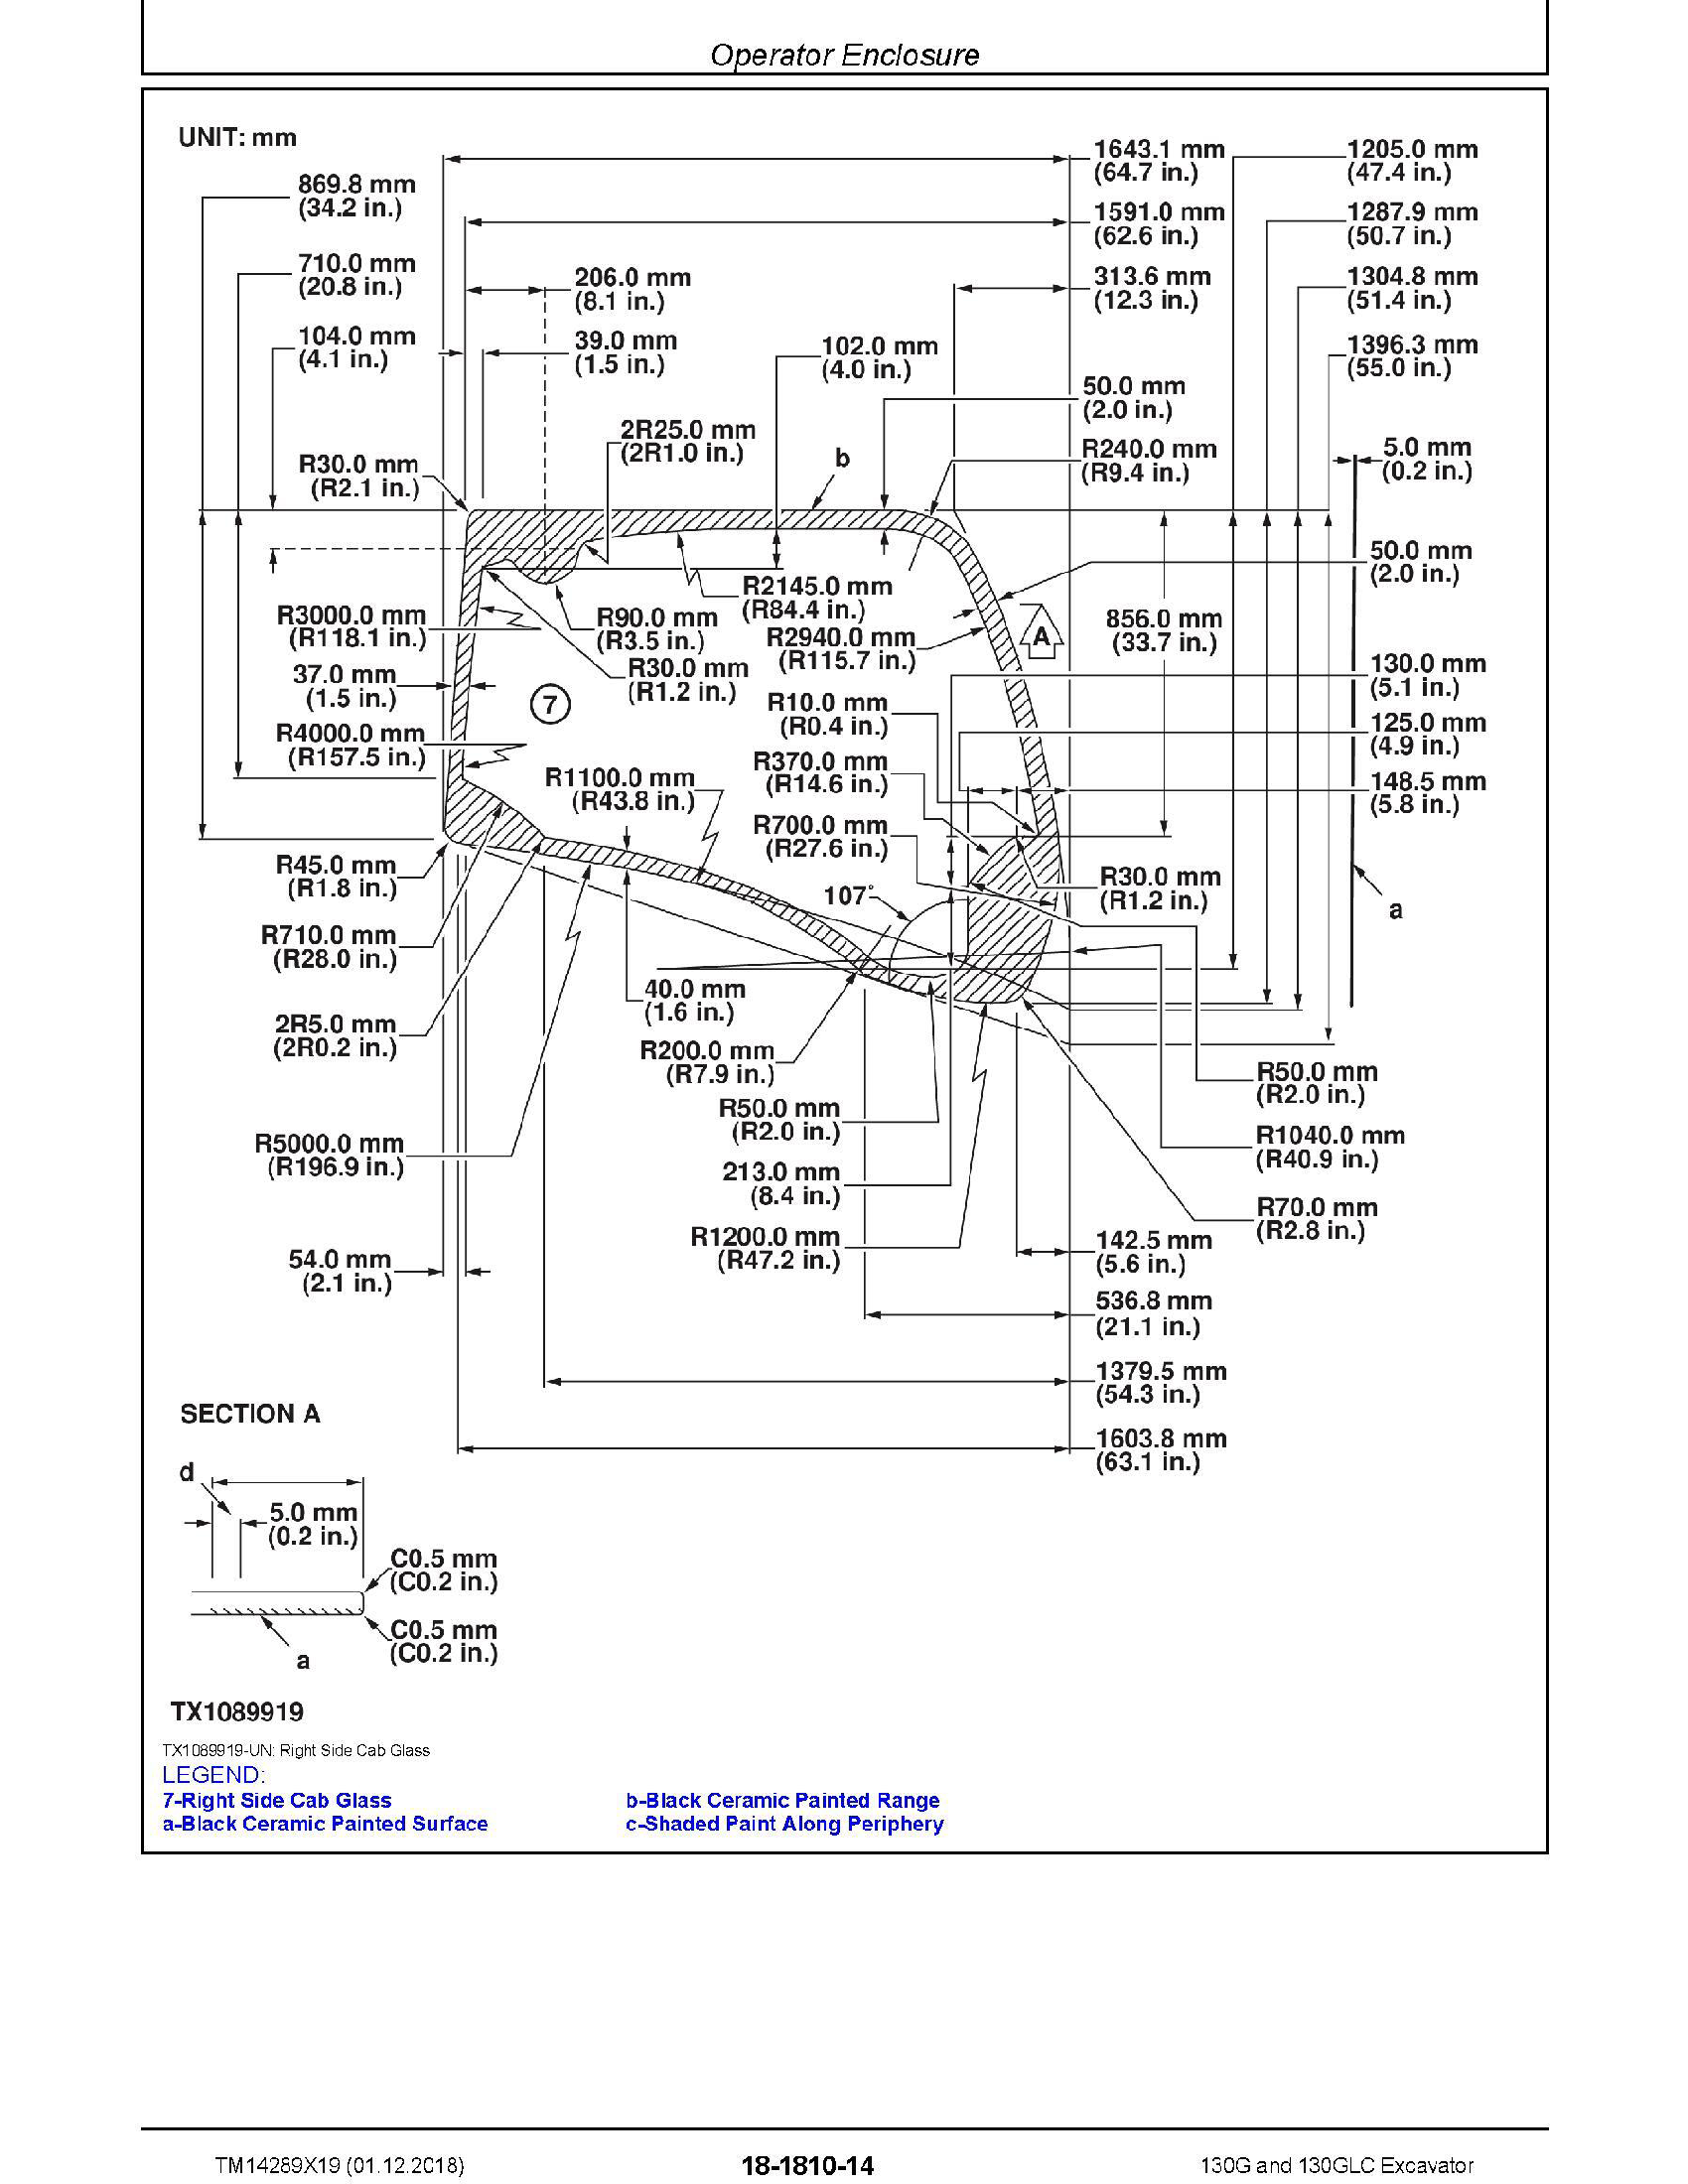 John Deere 244E manual pdf